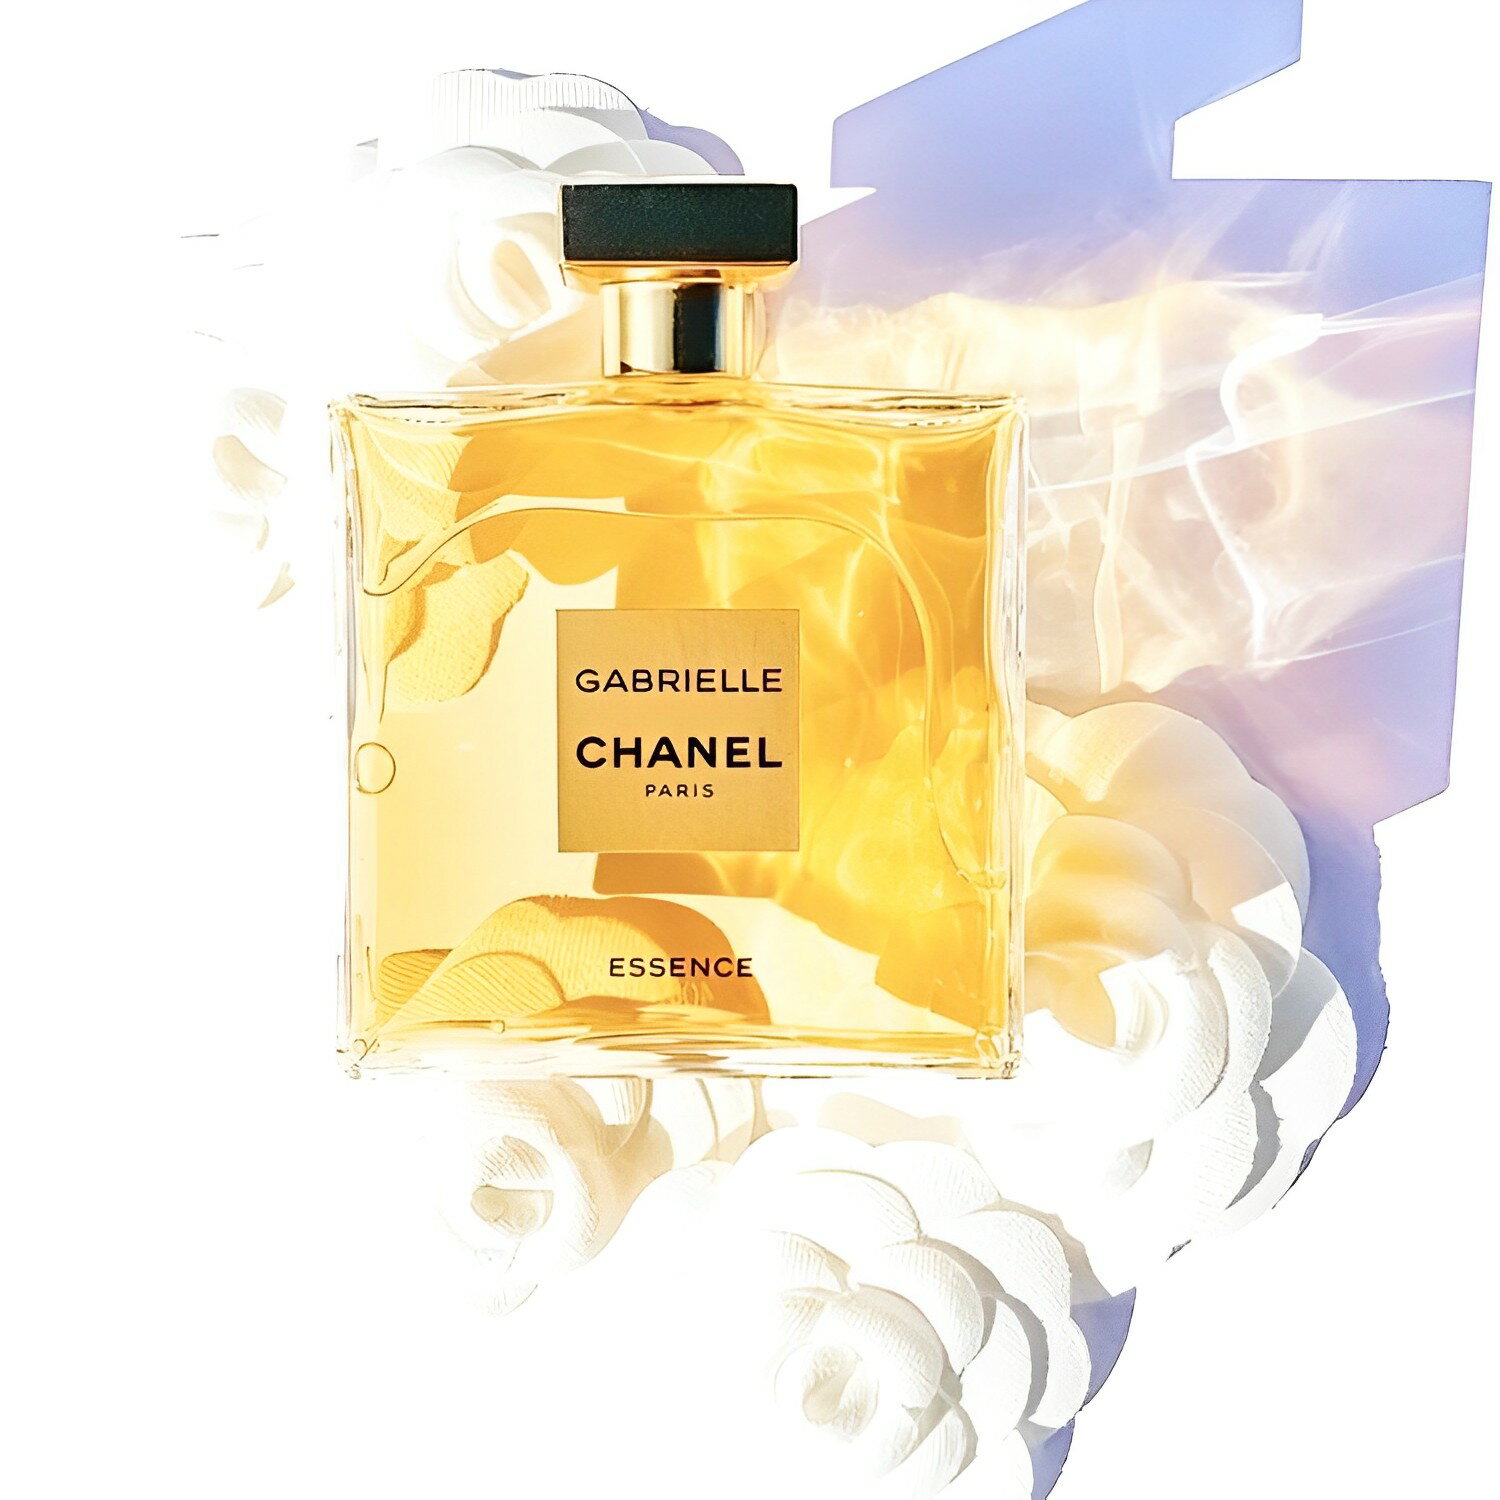 【無料サンプル付】CHANEL GABRIELLE CHANEL ESSENCE EDP 50mL ー 洗練された女性らしさを演出する、フローラル調の香り 並行輸入品 3